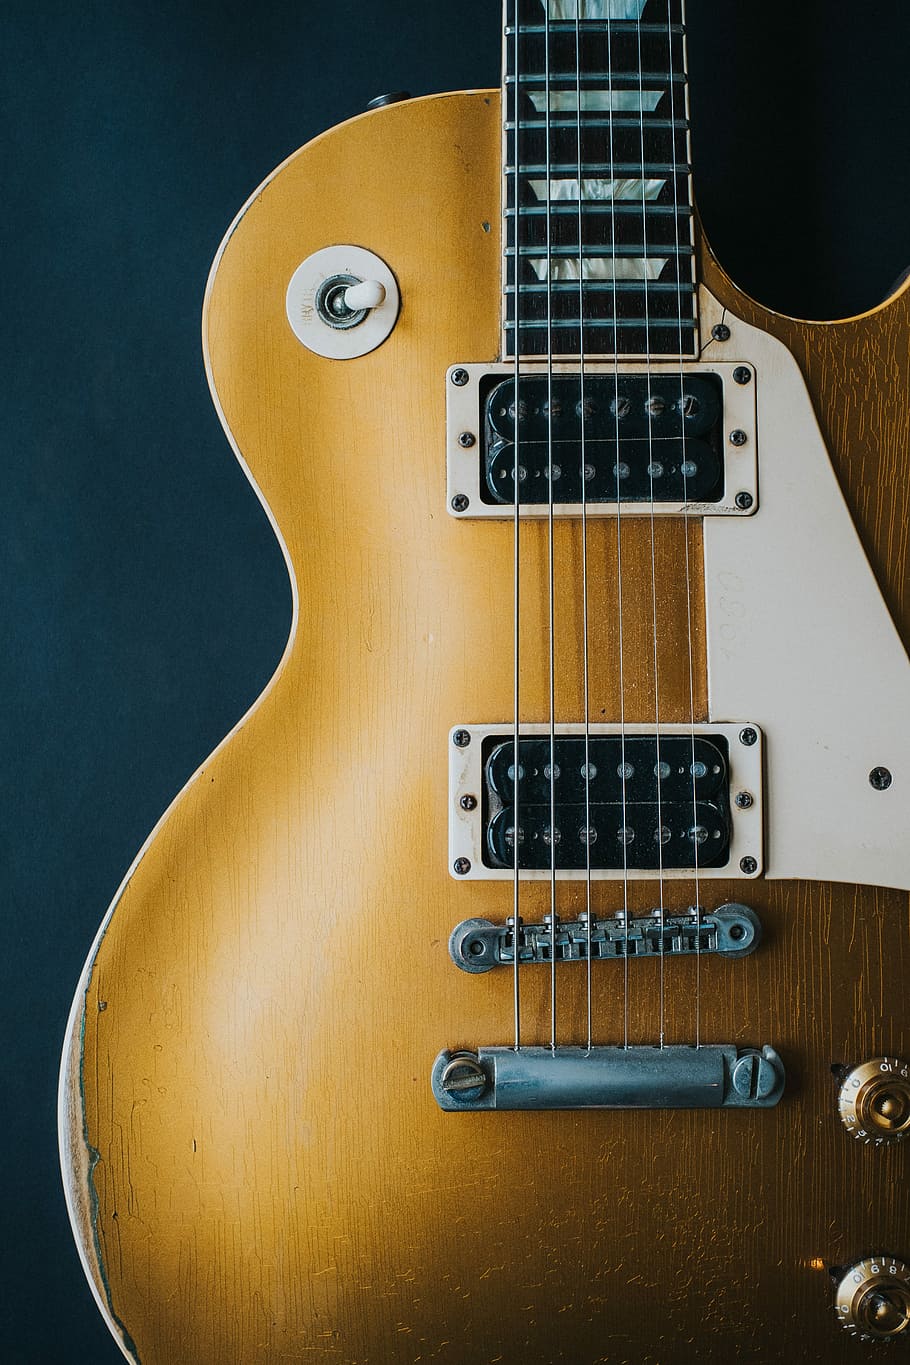 closeup photography of electric guitar, shallow focus photography of brown electronic guitar